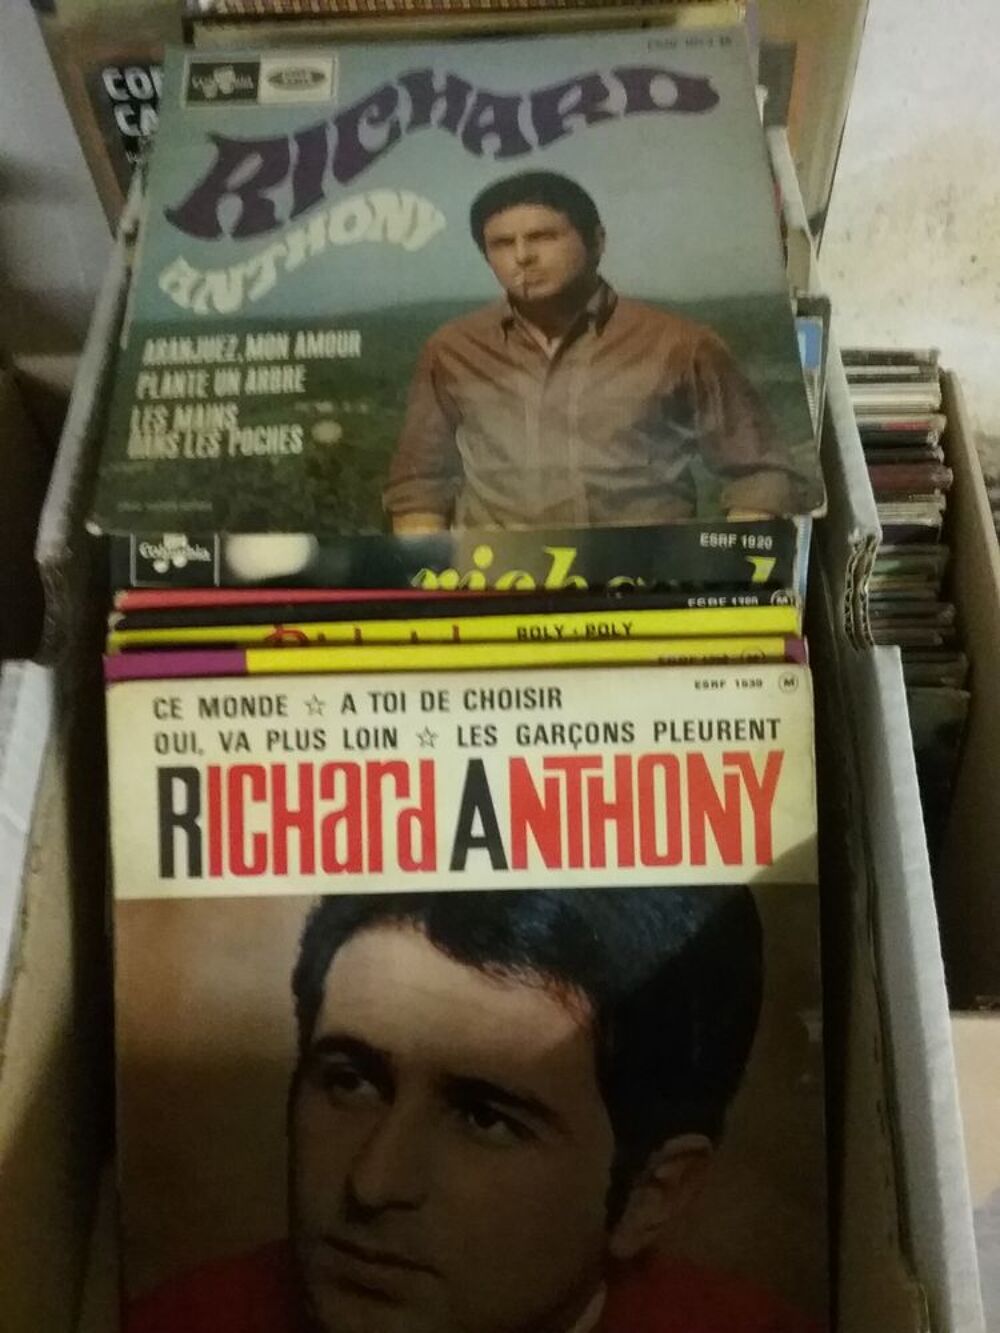 Vinyles 45 et 33 tours de Richard Anthony CD et vinyles